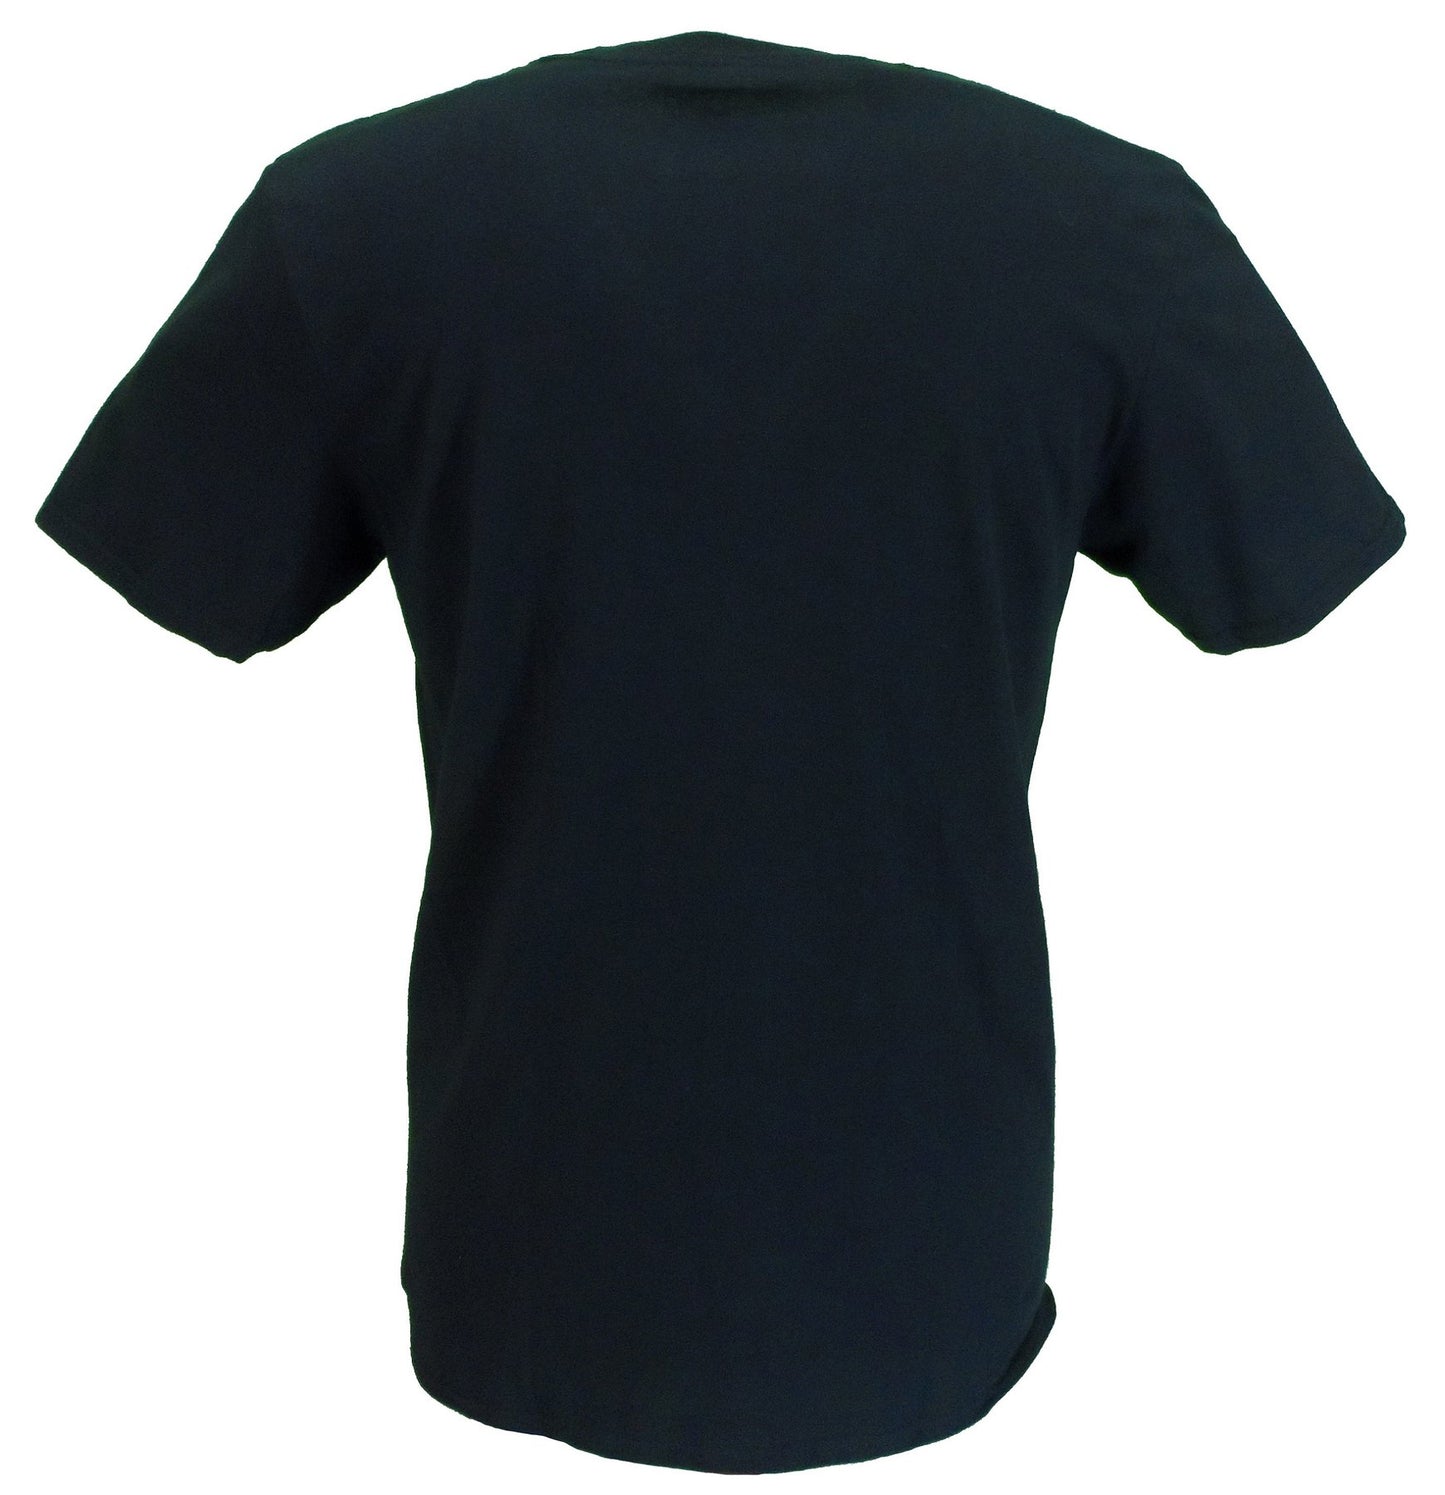 T-shirt noir officiel avec logo petits visages pour homme